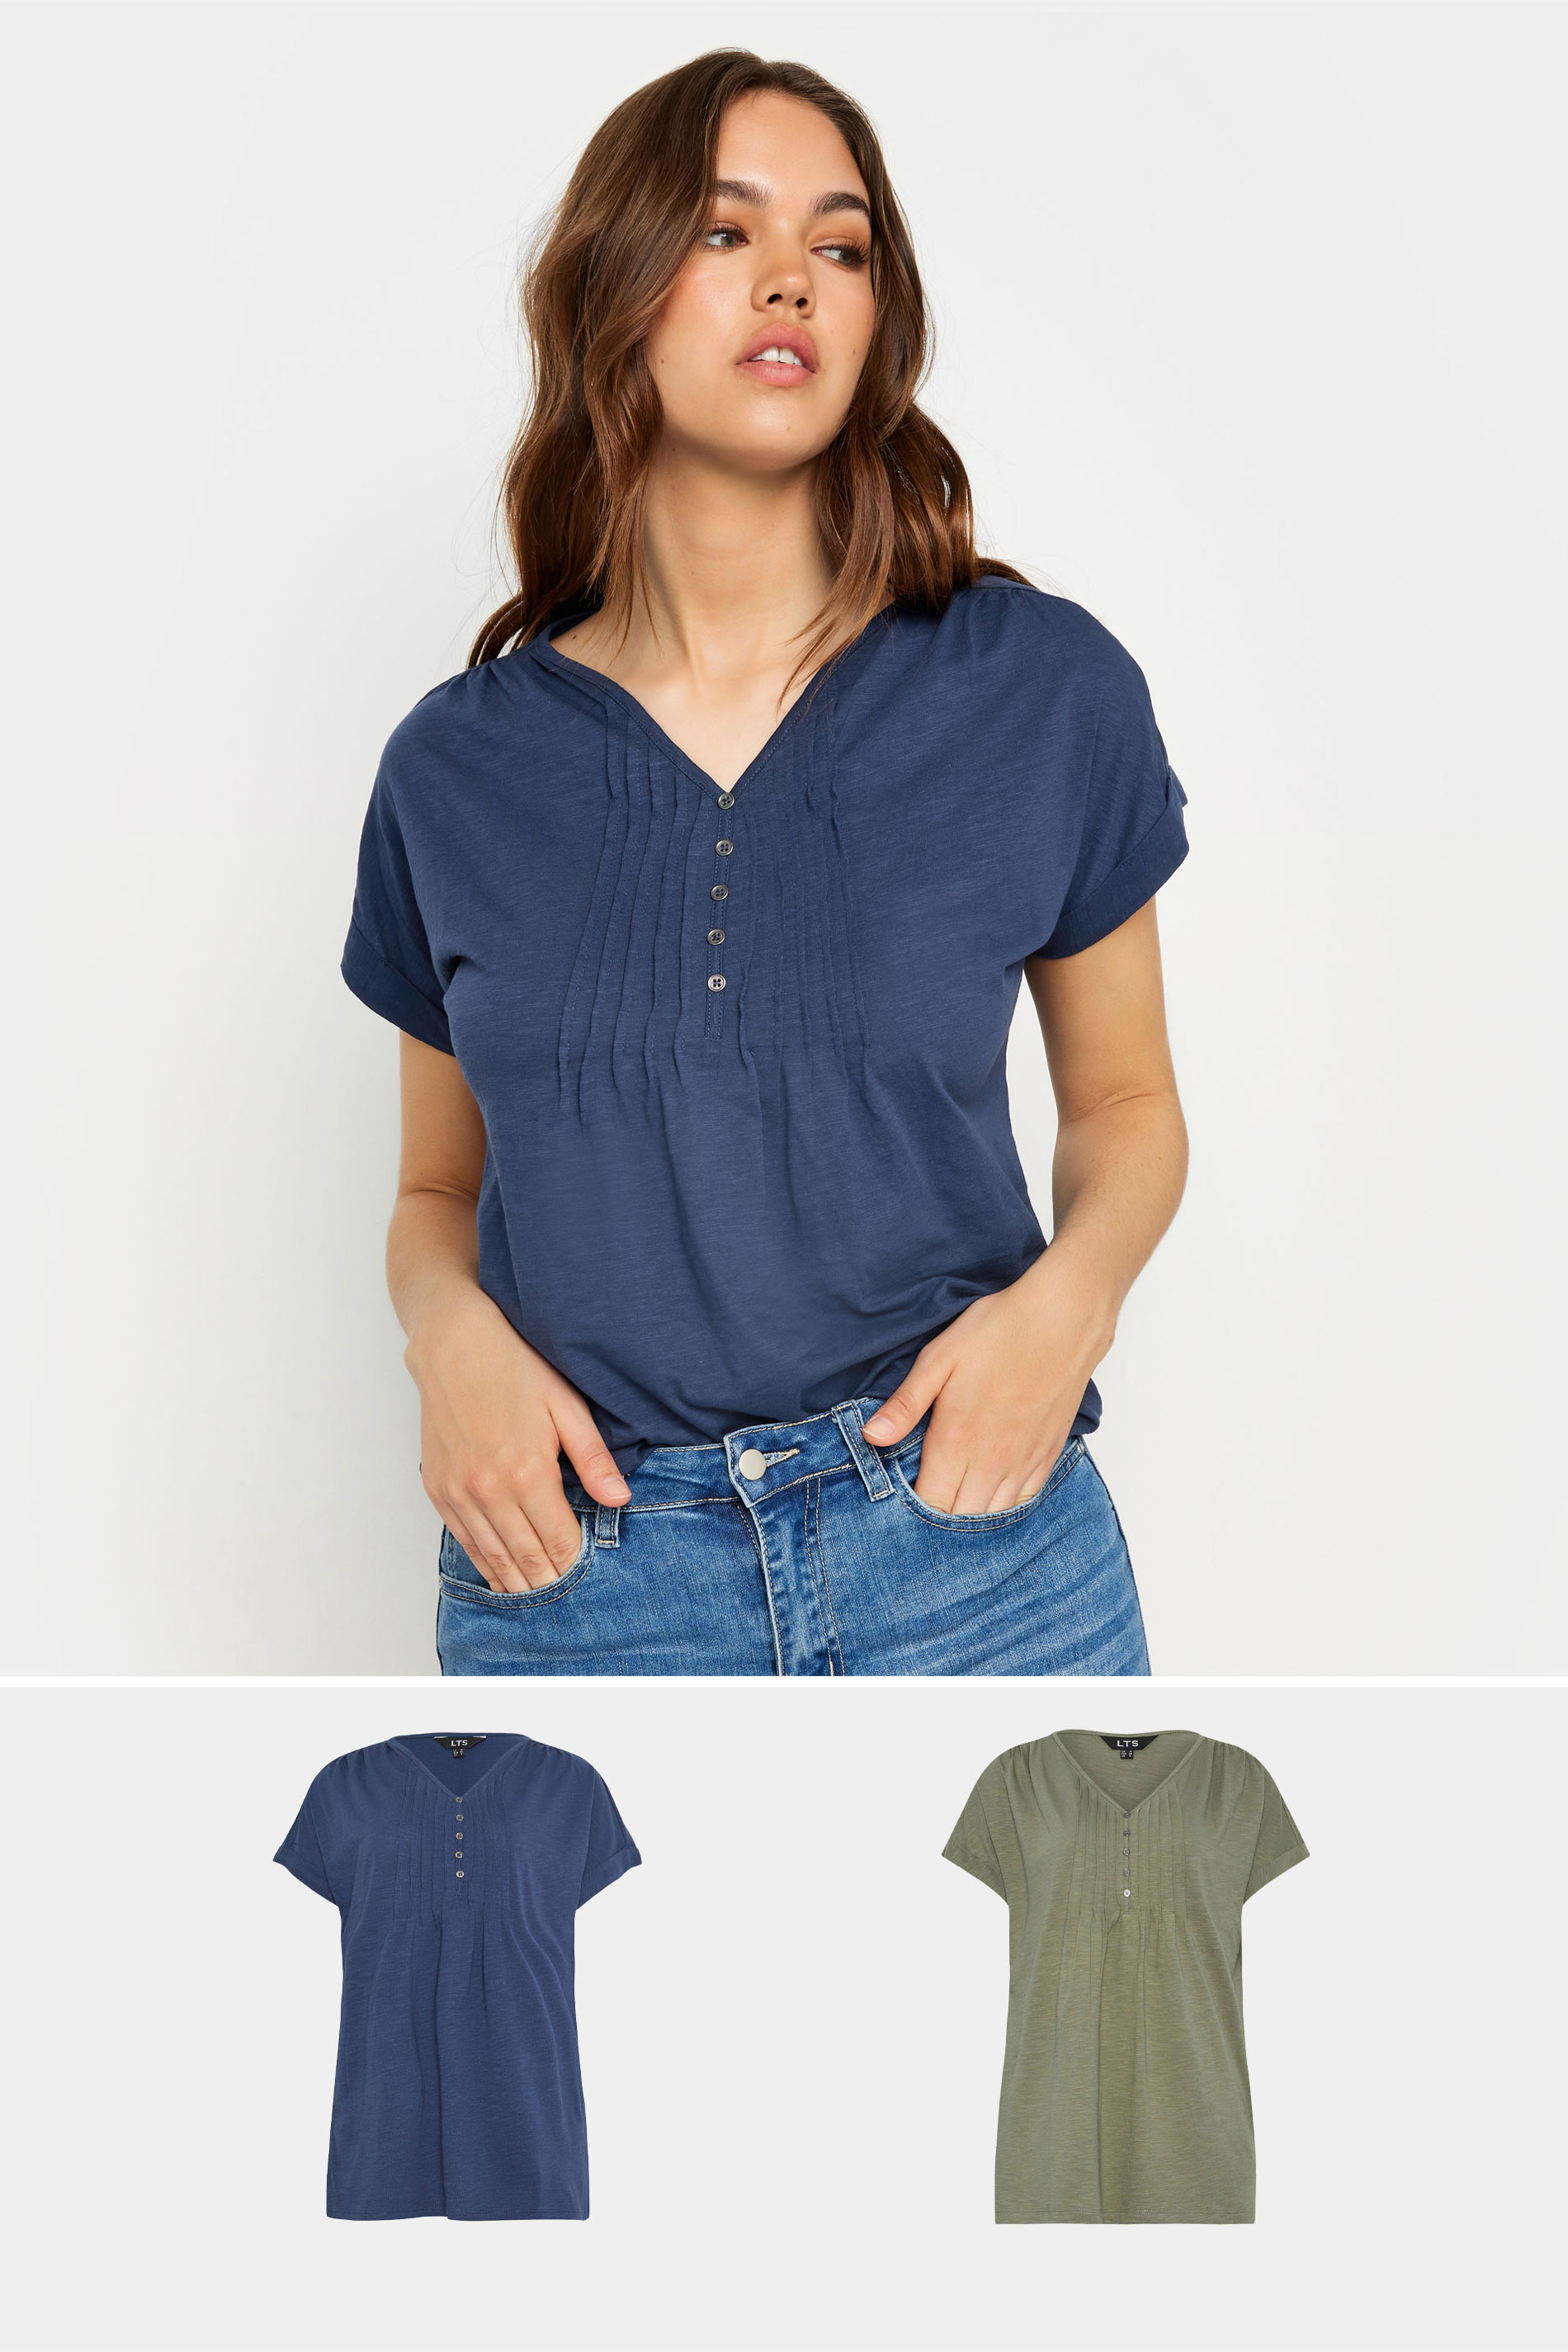 LTS 2 PACK Tall Women's Navy Blue & Khaki Green Cotton Henley T-Shirts | Long Tall Sally 1